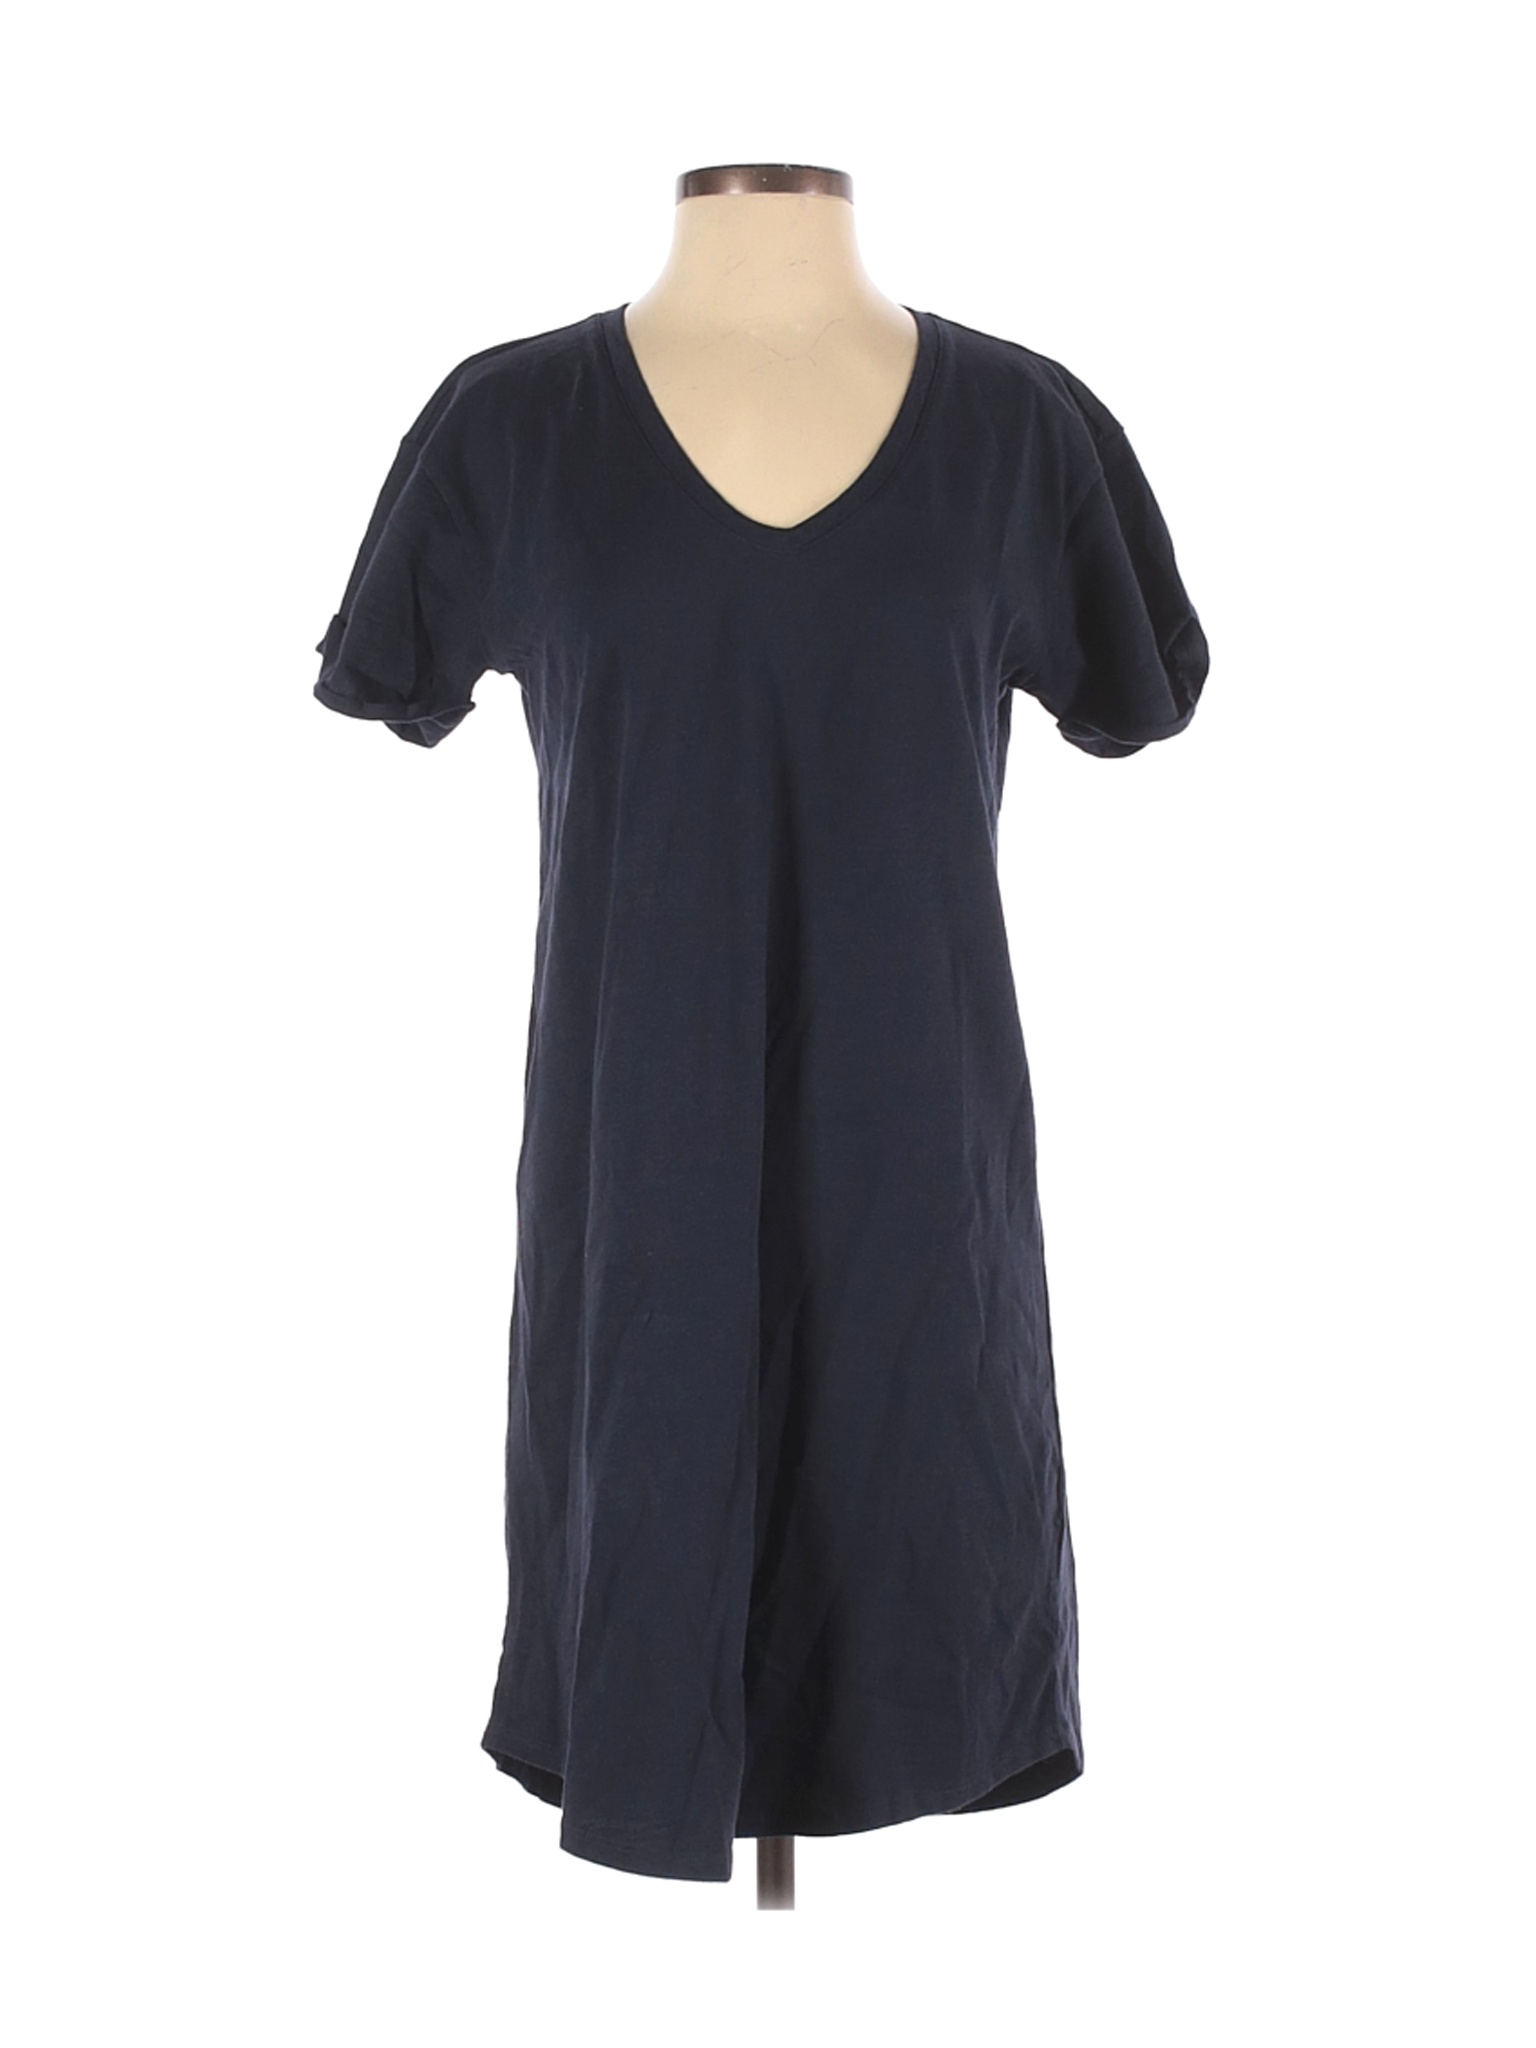 Daily Ritual Women Blue Casual Dress S | eBay